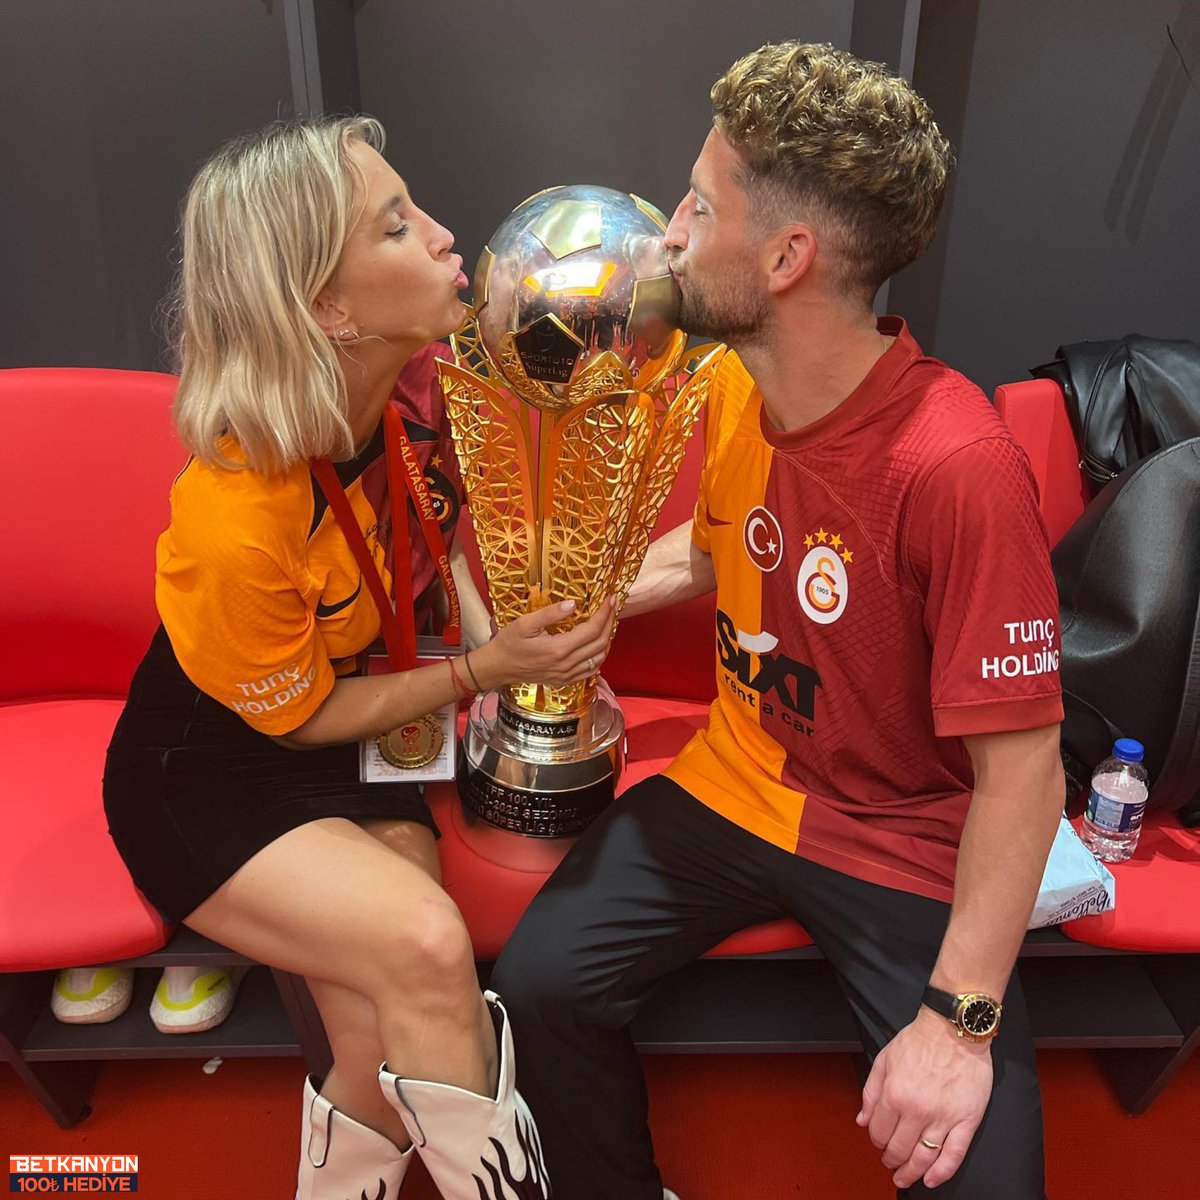 Kat Kerkhofs, İstanbul'da yaşamaktan dolayı çok mutlu olduğunu belirterek eşi Dries Mertens'in Galatasaray'da kariyerine devam etmesi için ısrarcı oldu ve sözleşme yenileme sürecinde büyük rol oynadı. (Sabah)